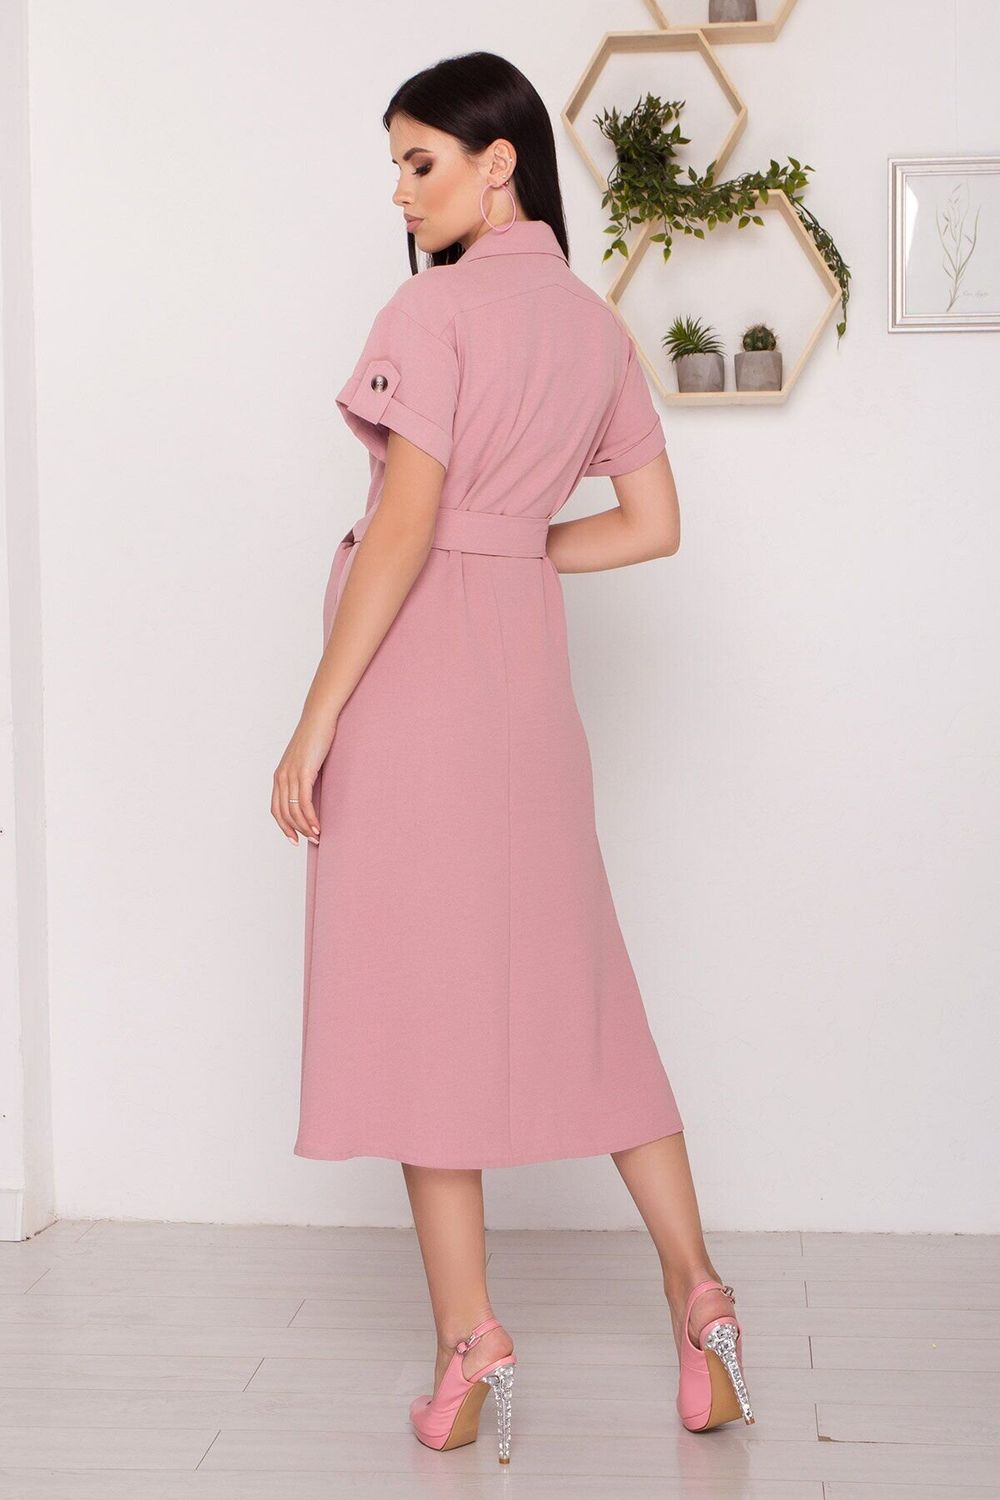 Стильне плаття сорочка з коротким рукавом кольору пудра - фото